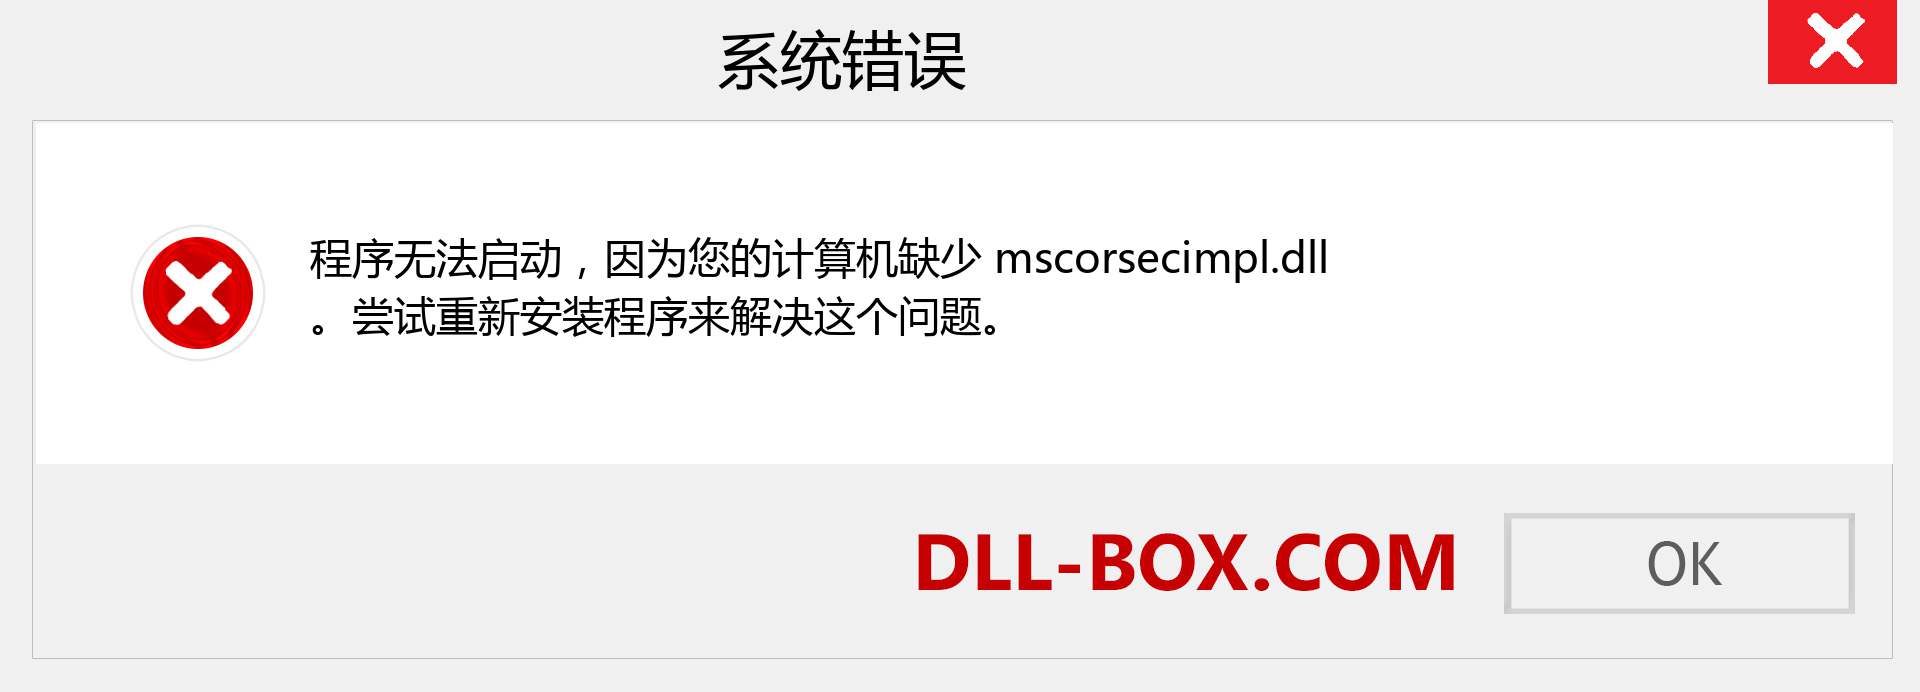 mscorsecimpl.dll 文件丢失？。 适用于 Windows 7、8、10 的下载 - 修复 Windows、照片、图像上的 mscorsecimpl dll 丢失错误